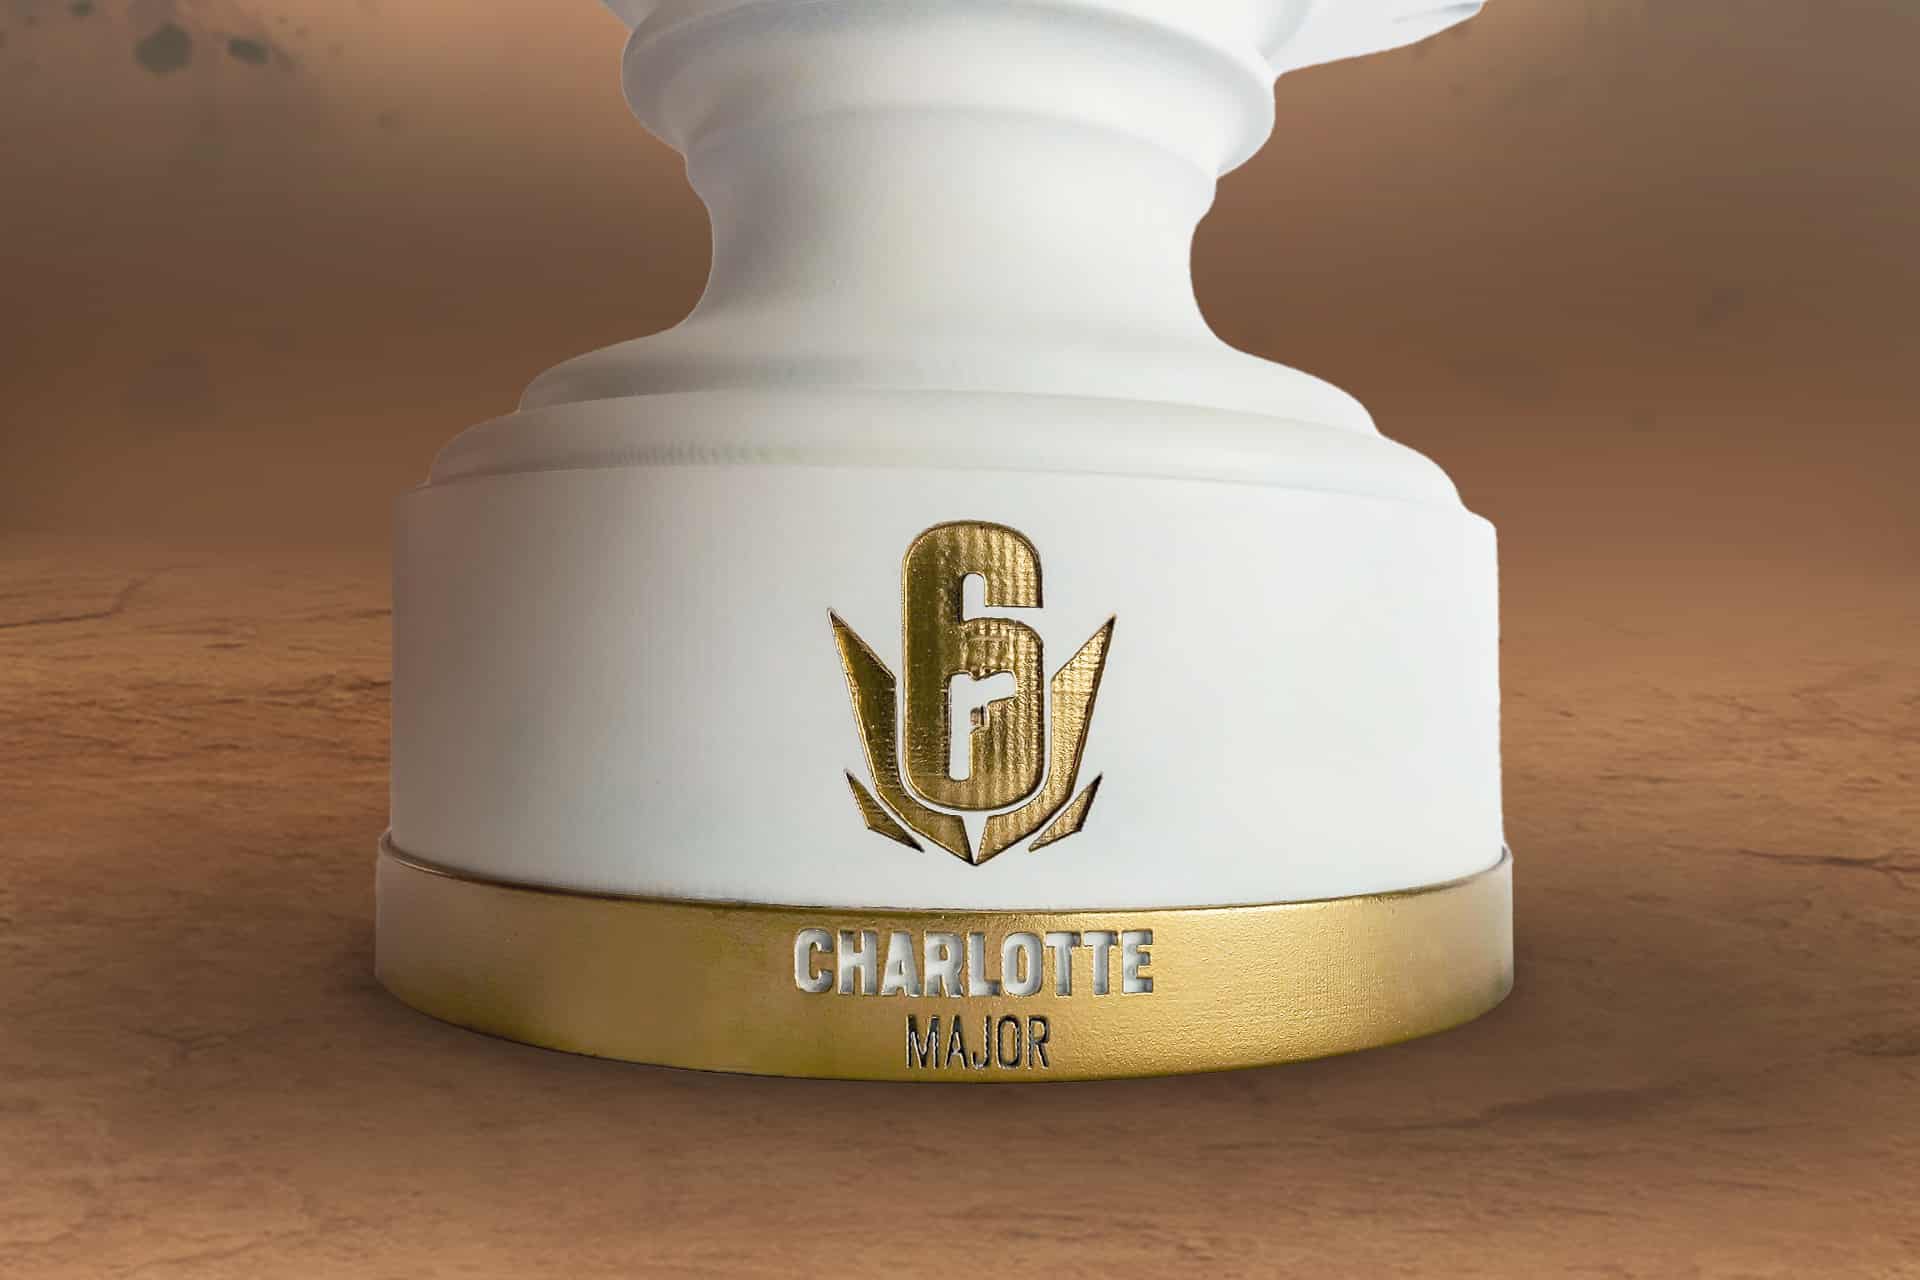 L'image présente le trophée Six Charlotte Major. Le trophée est en plan rapproché sur le bas / socle du trophée, présentant le logo du Six Charlotte Major, en détail gravé et doré sur fond blanc.